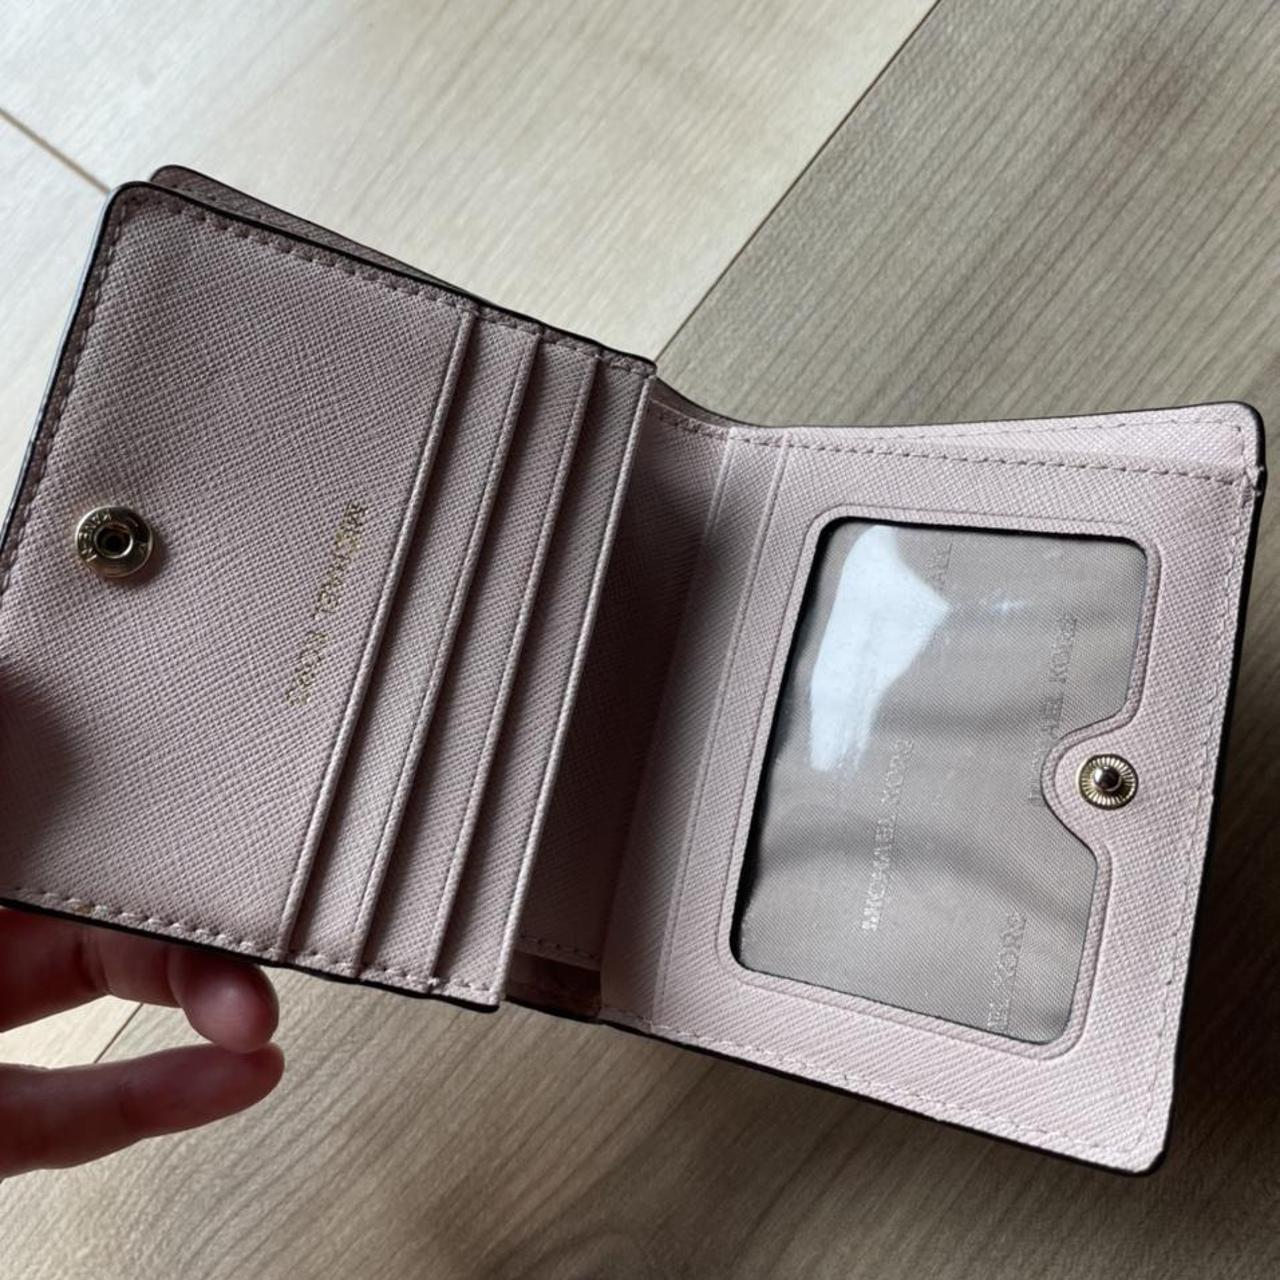 Pink Michael Kors wallet Definitely used as seen in - Depop